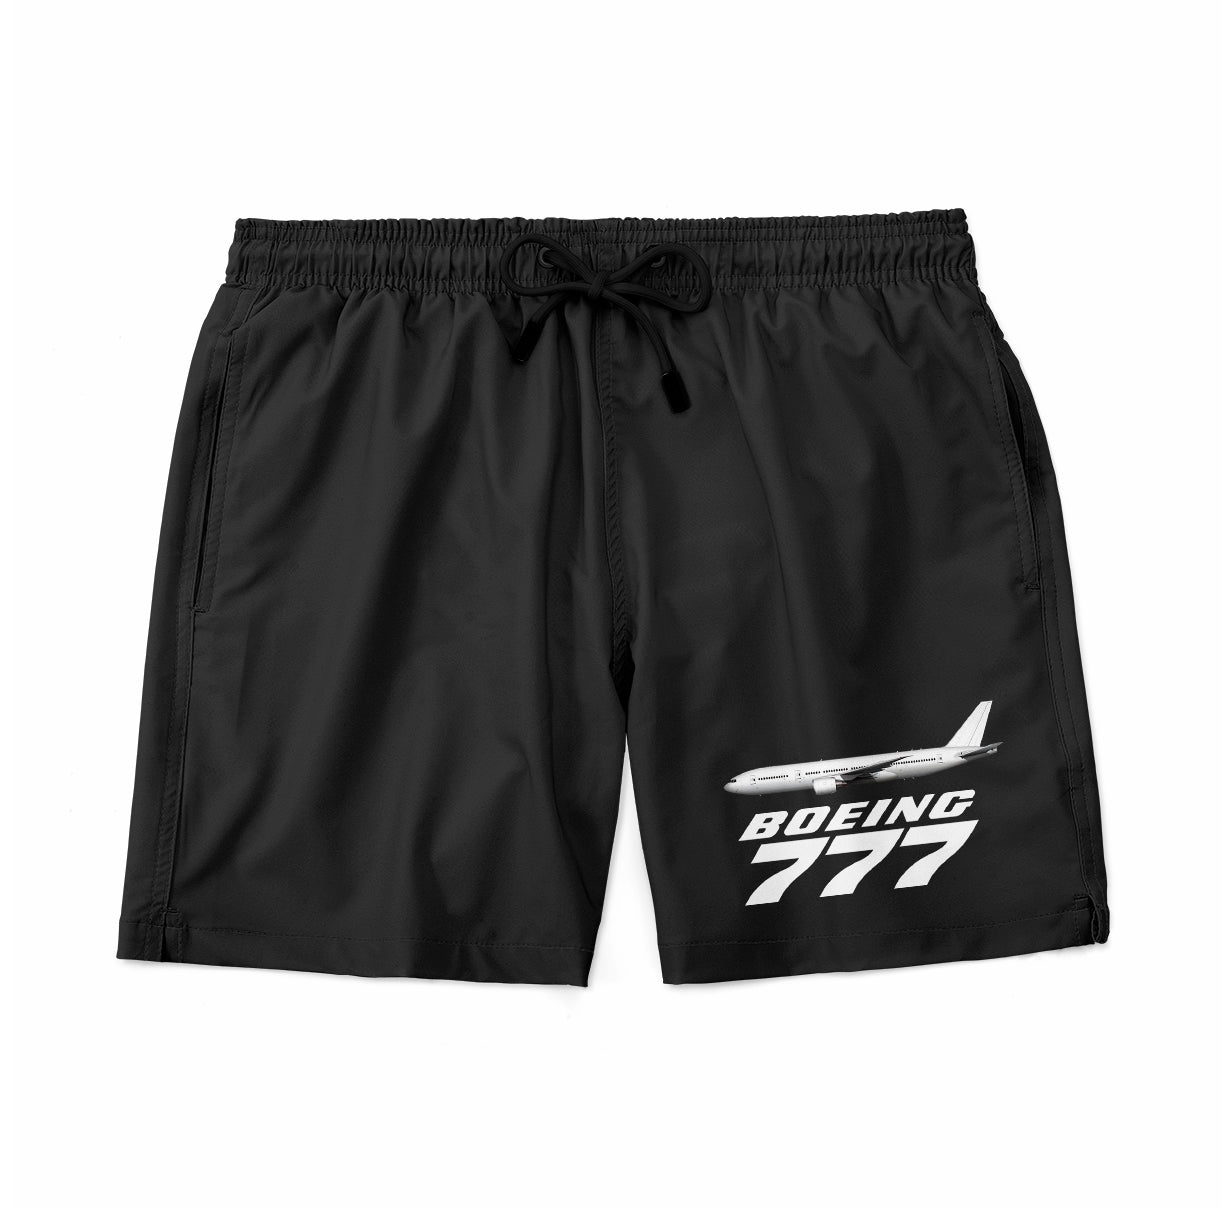 The Boeing 777 Designed Swim Trunks & Shorts